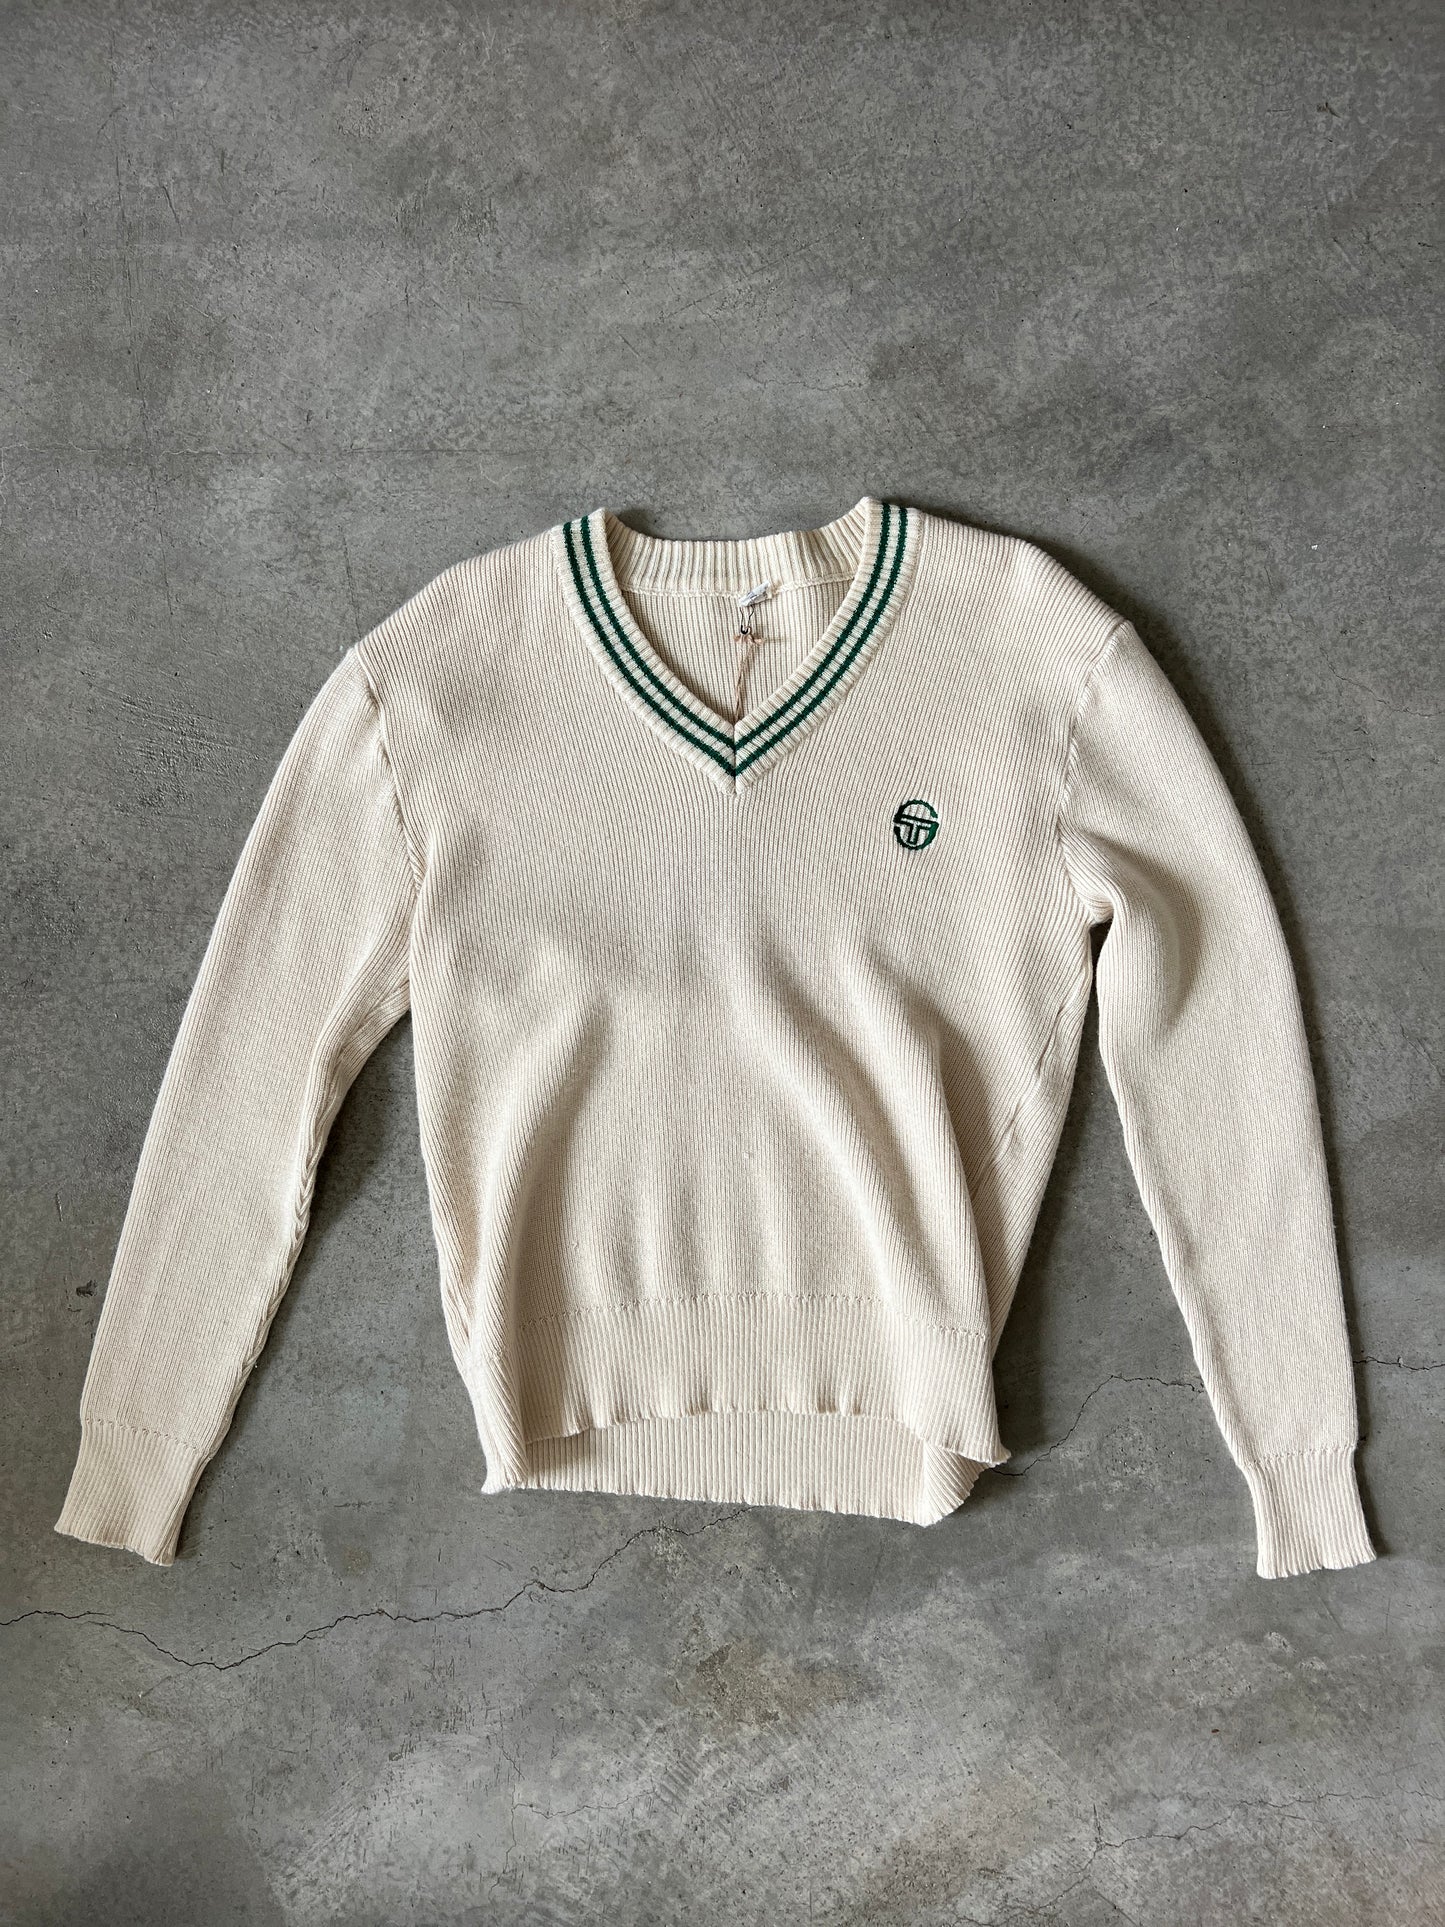 Vintage Sergio Tacchini Cream Sweater (circa 1980s)